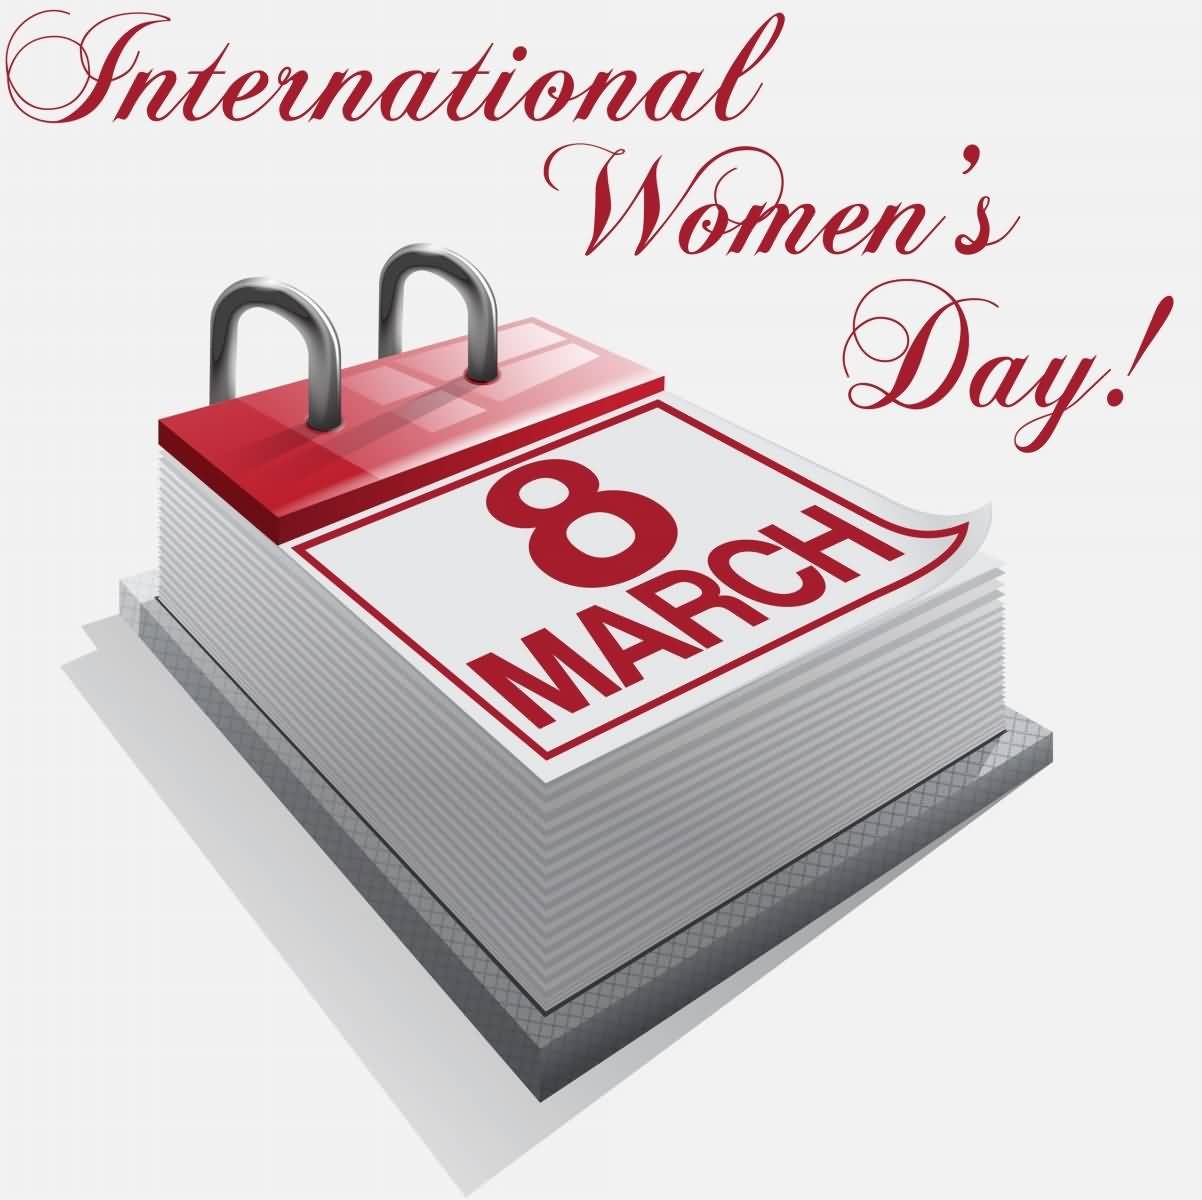 International Women's Day 8 March Calendar